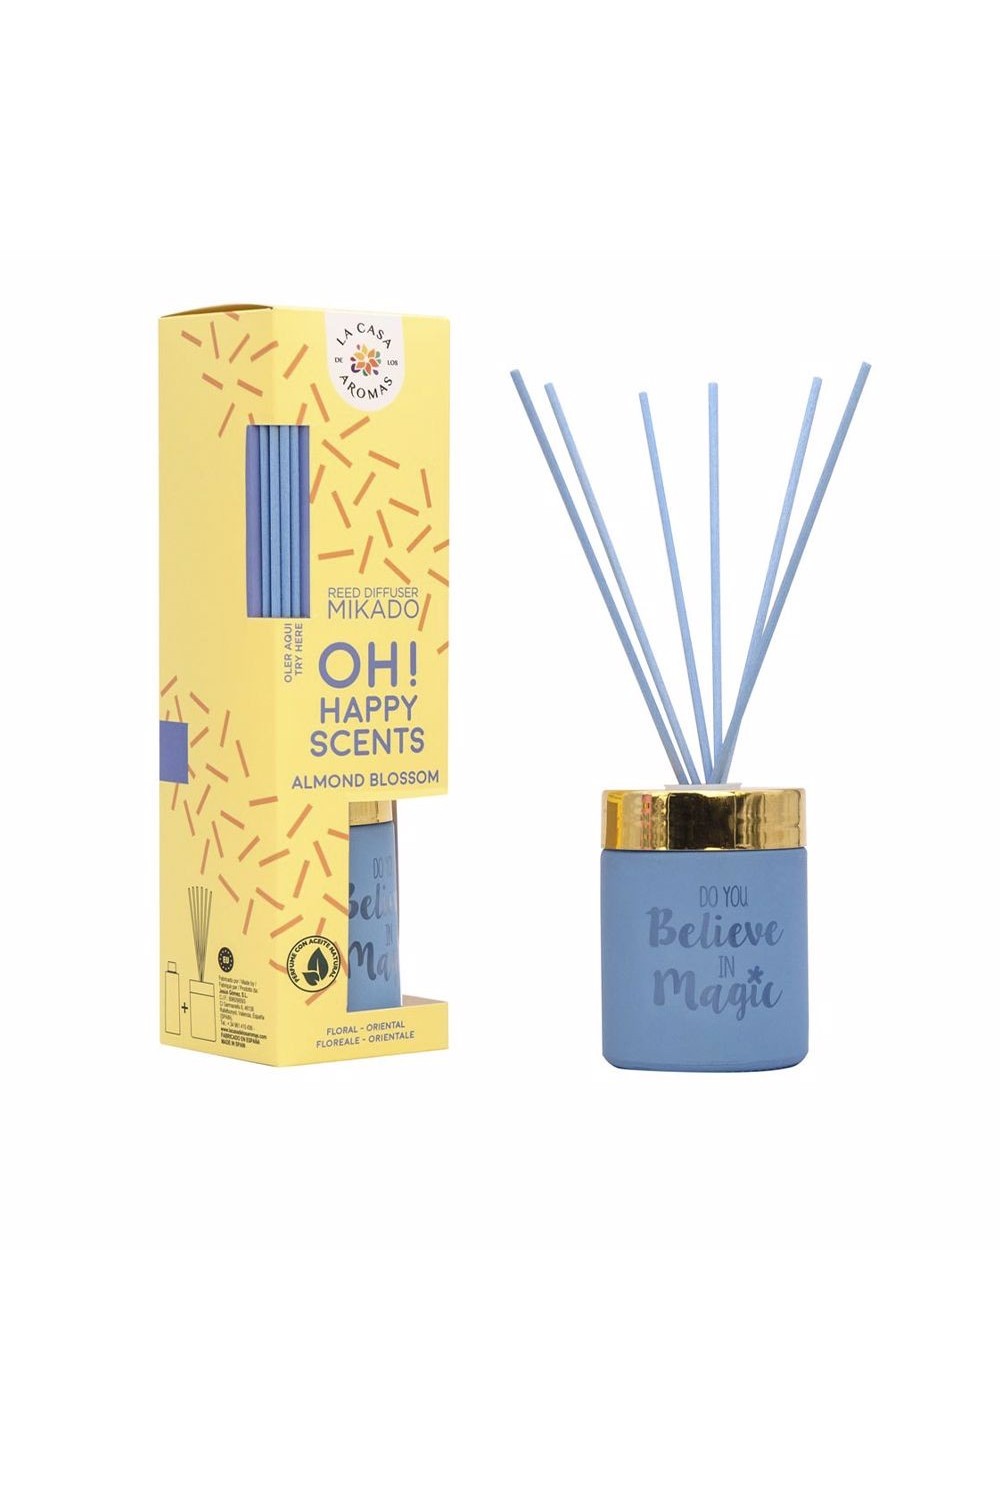 La Casa De Los Aromas Ambientador Mikado Almond Blossom Do You Believe In Magic